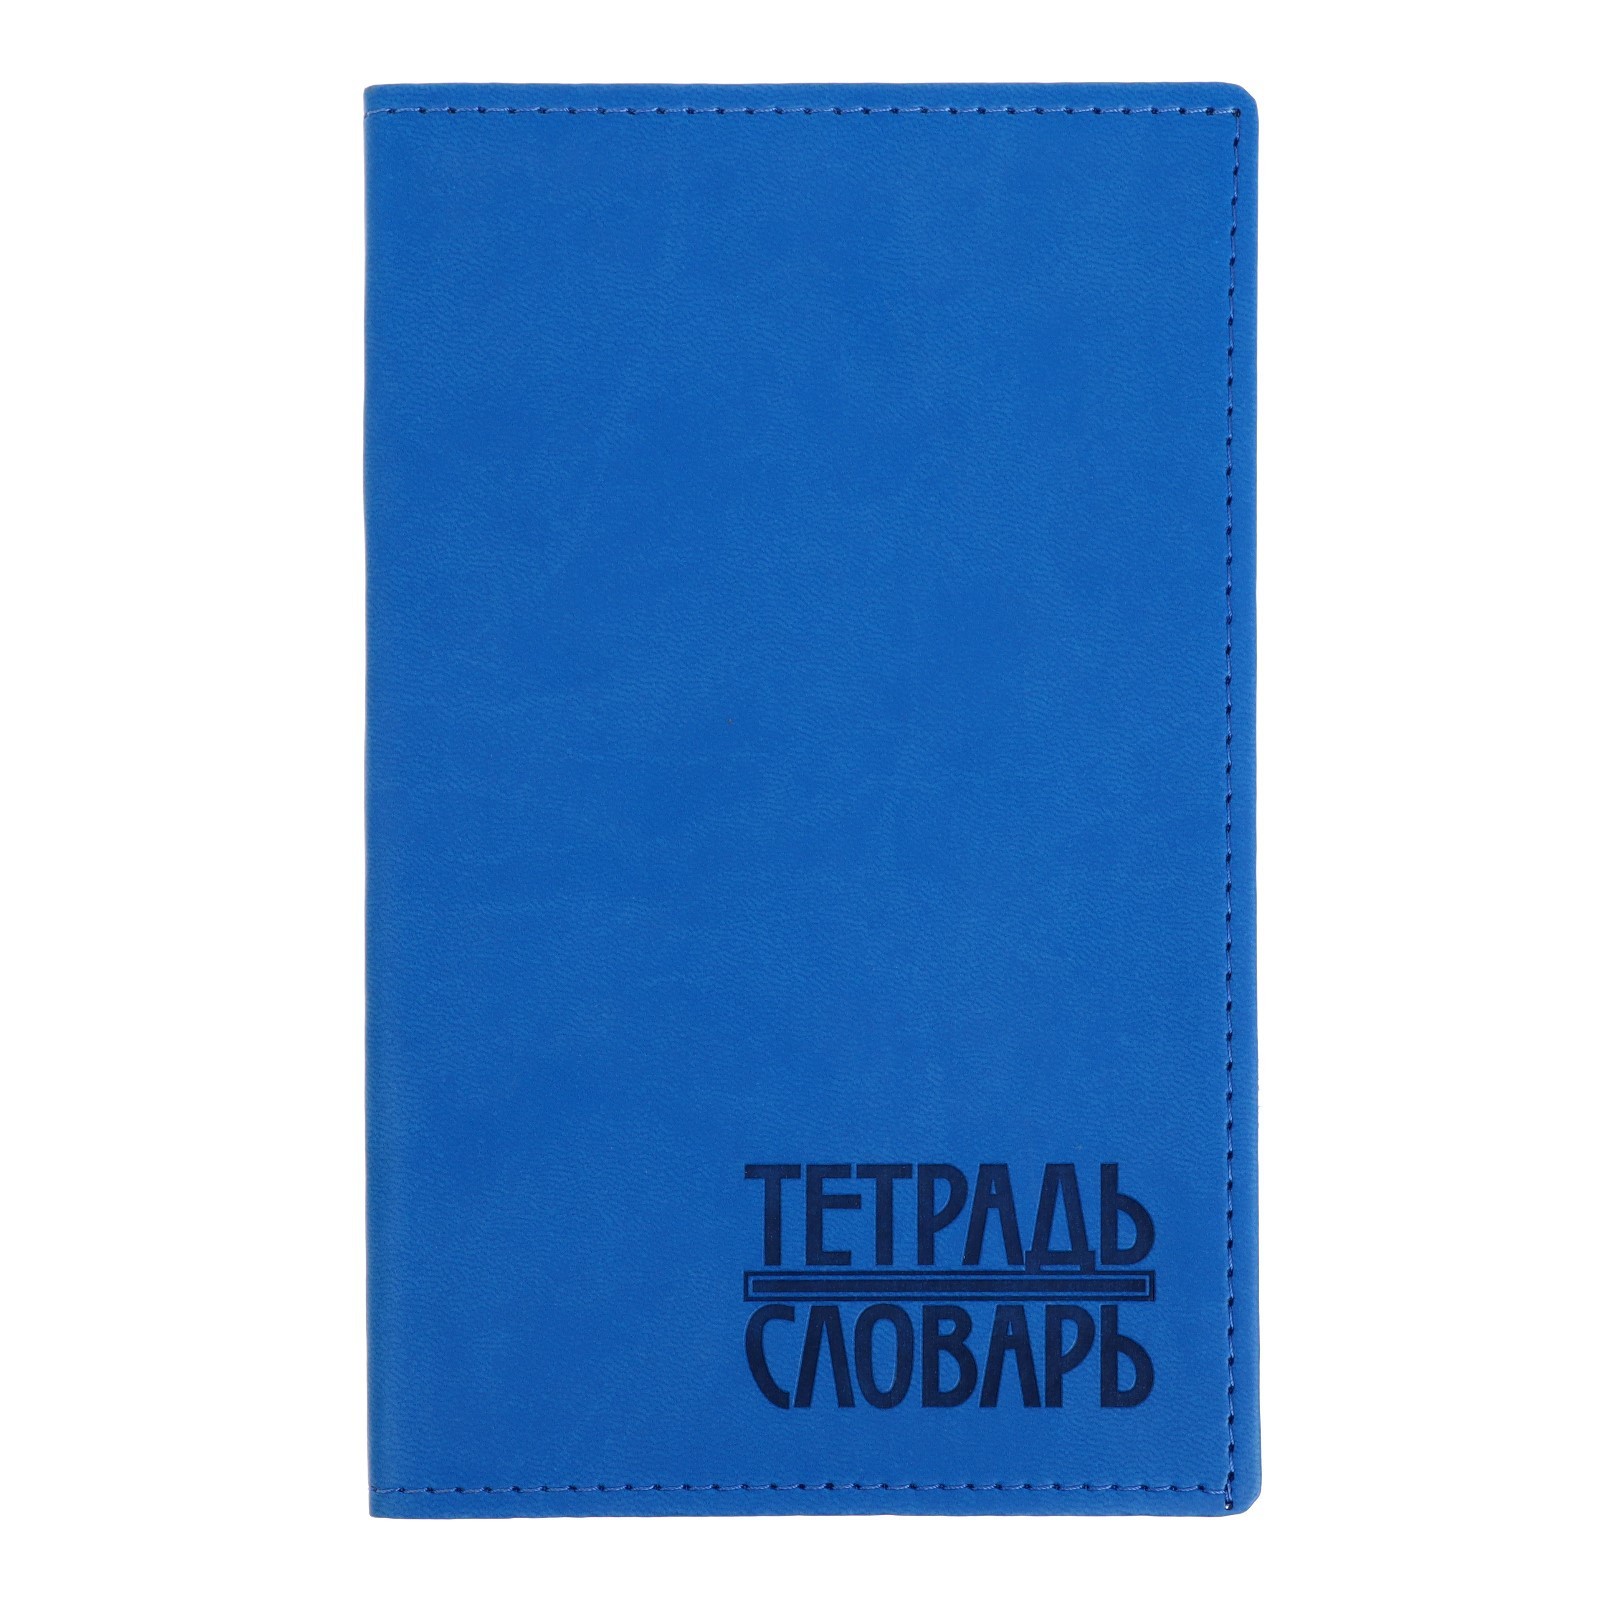 Тетрадь для записи иностранных слов Арго Книга Vivella ТДЗ-109, 48 листов, ярко-синий